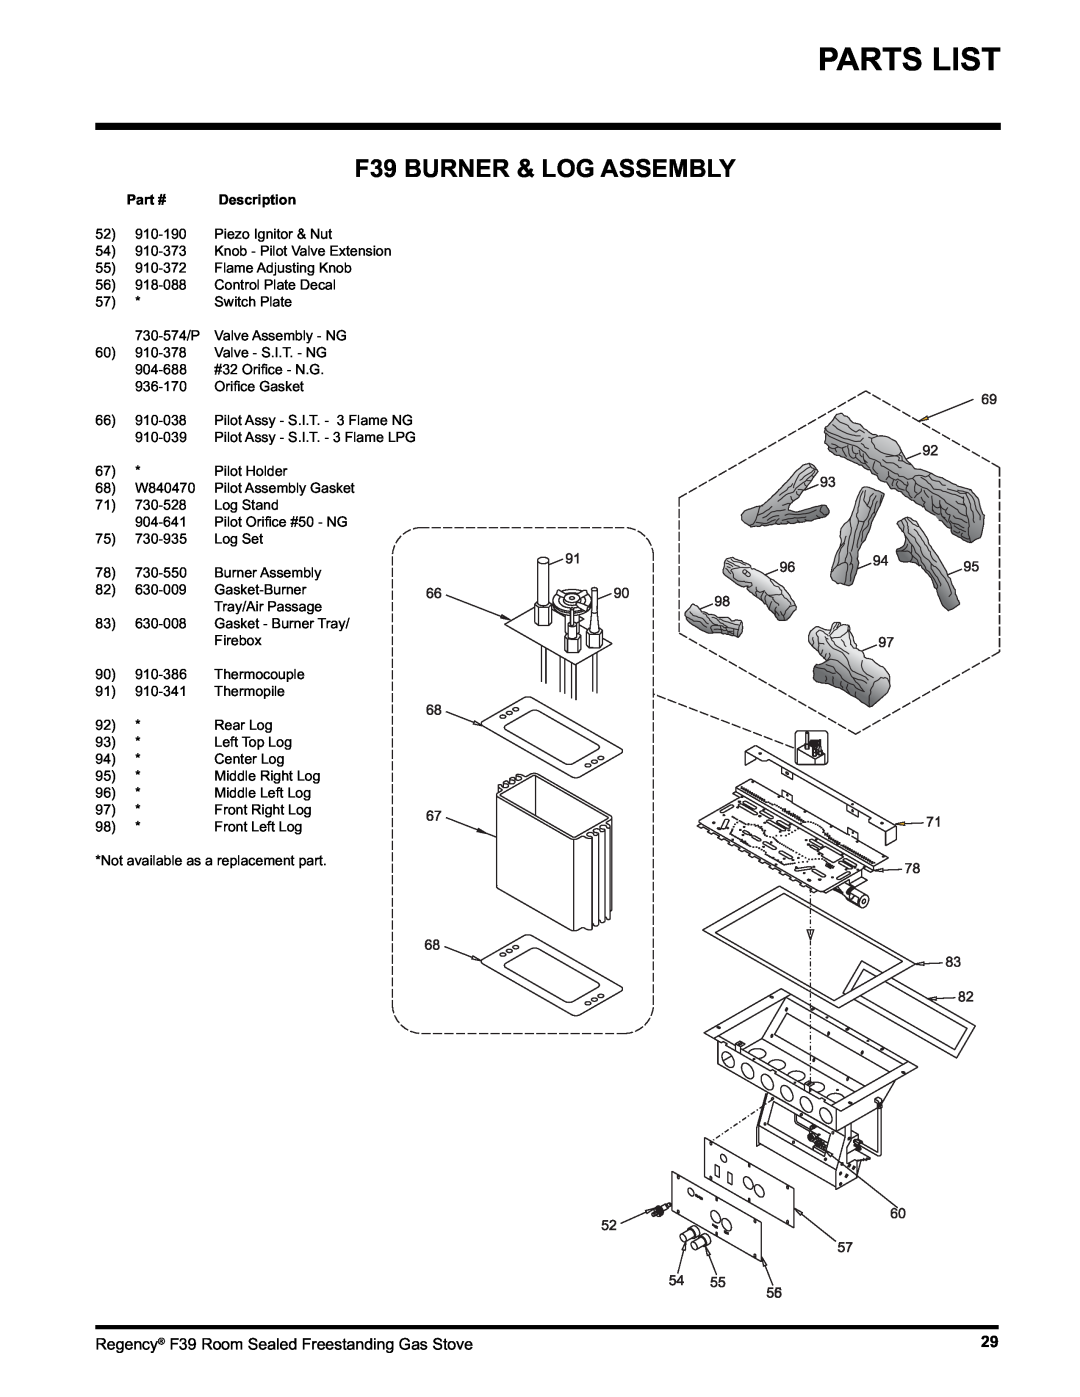 Regency F39-LPG, F39-NG installation manual F39 BURNER & LOG ASSEMBLY, Parts List 